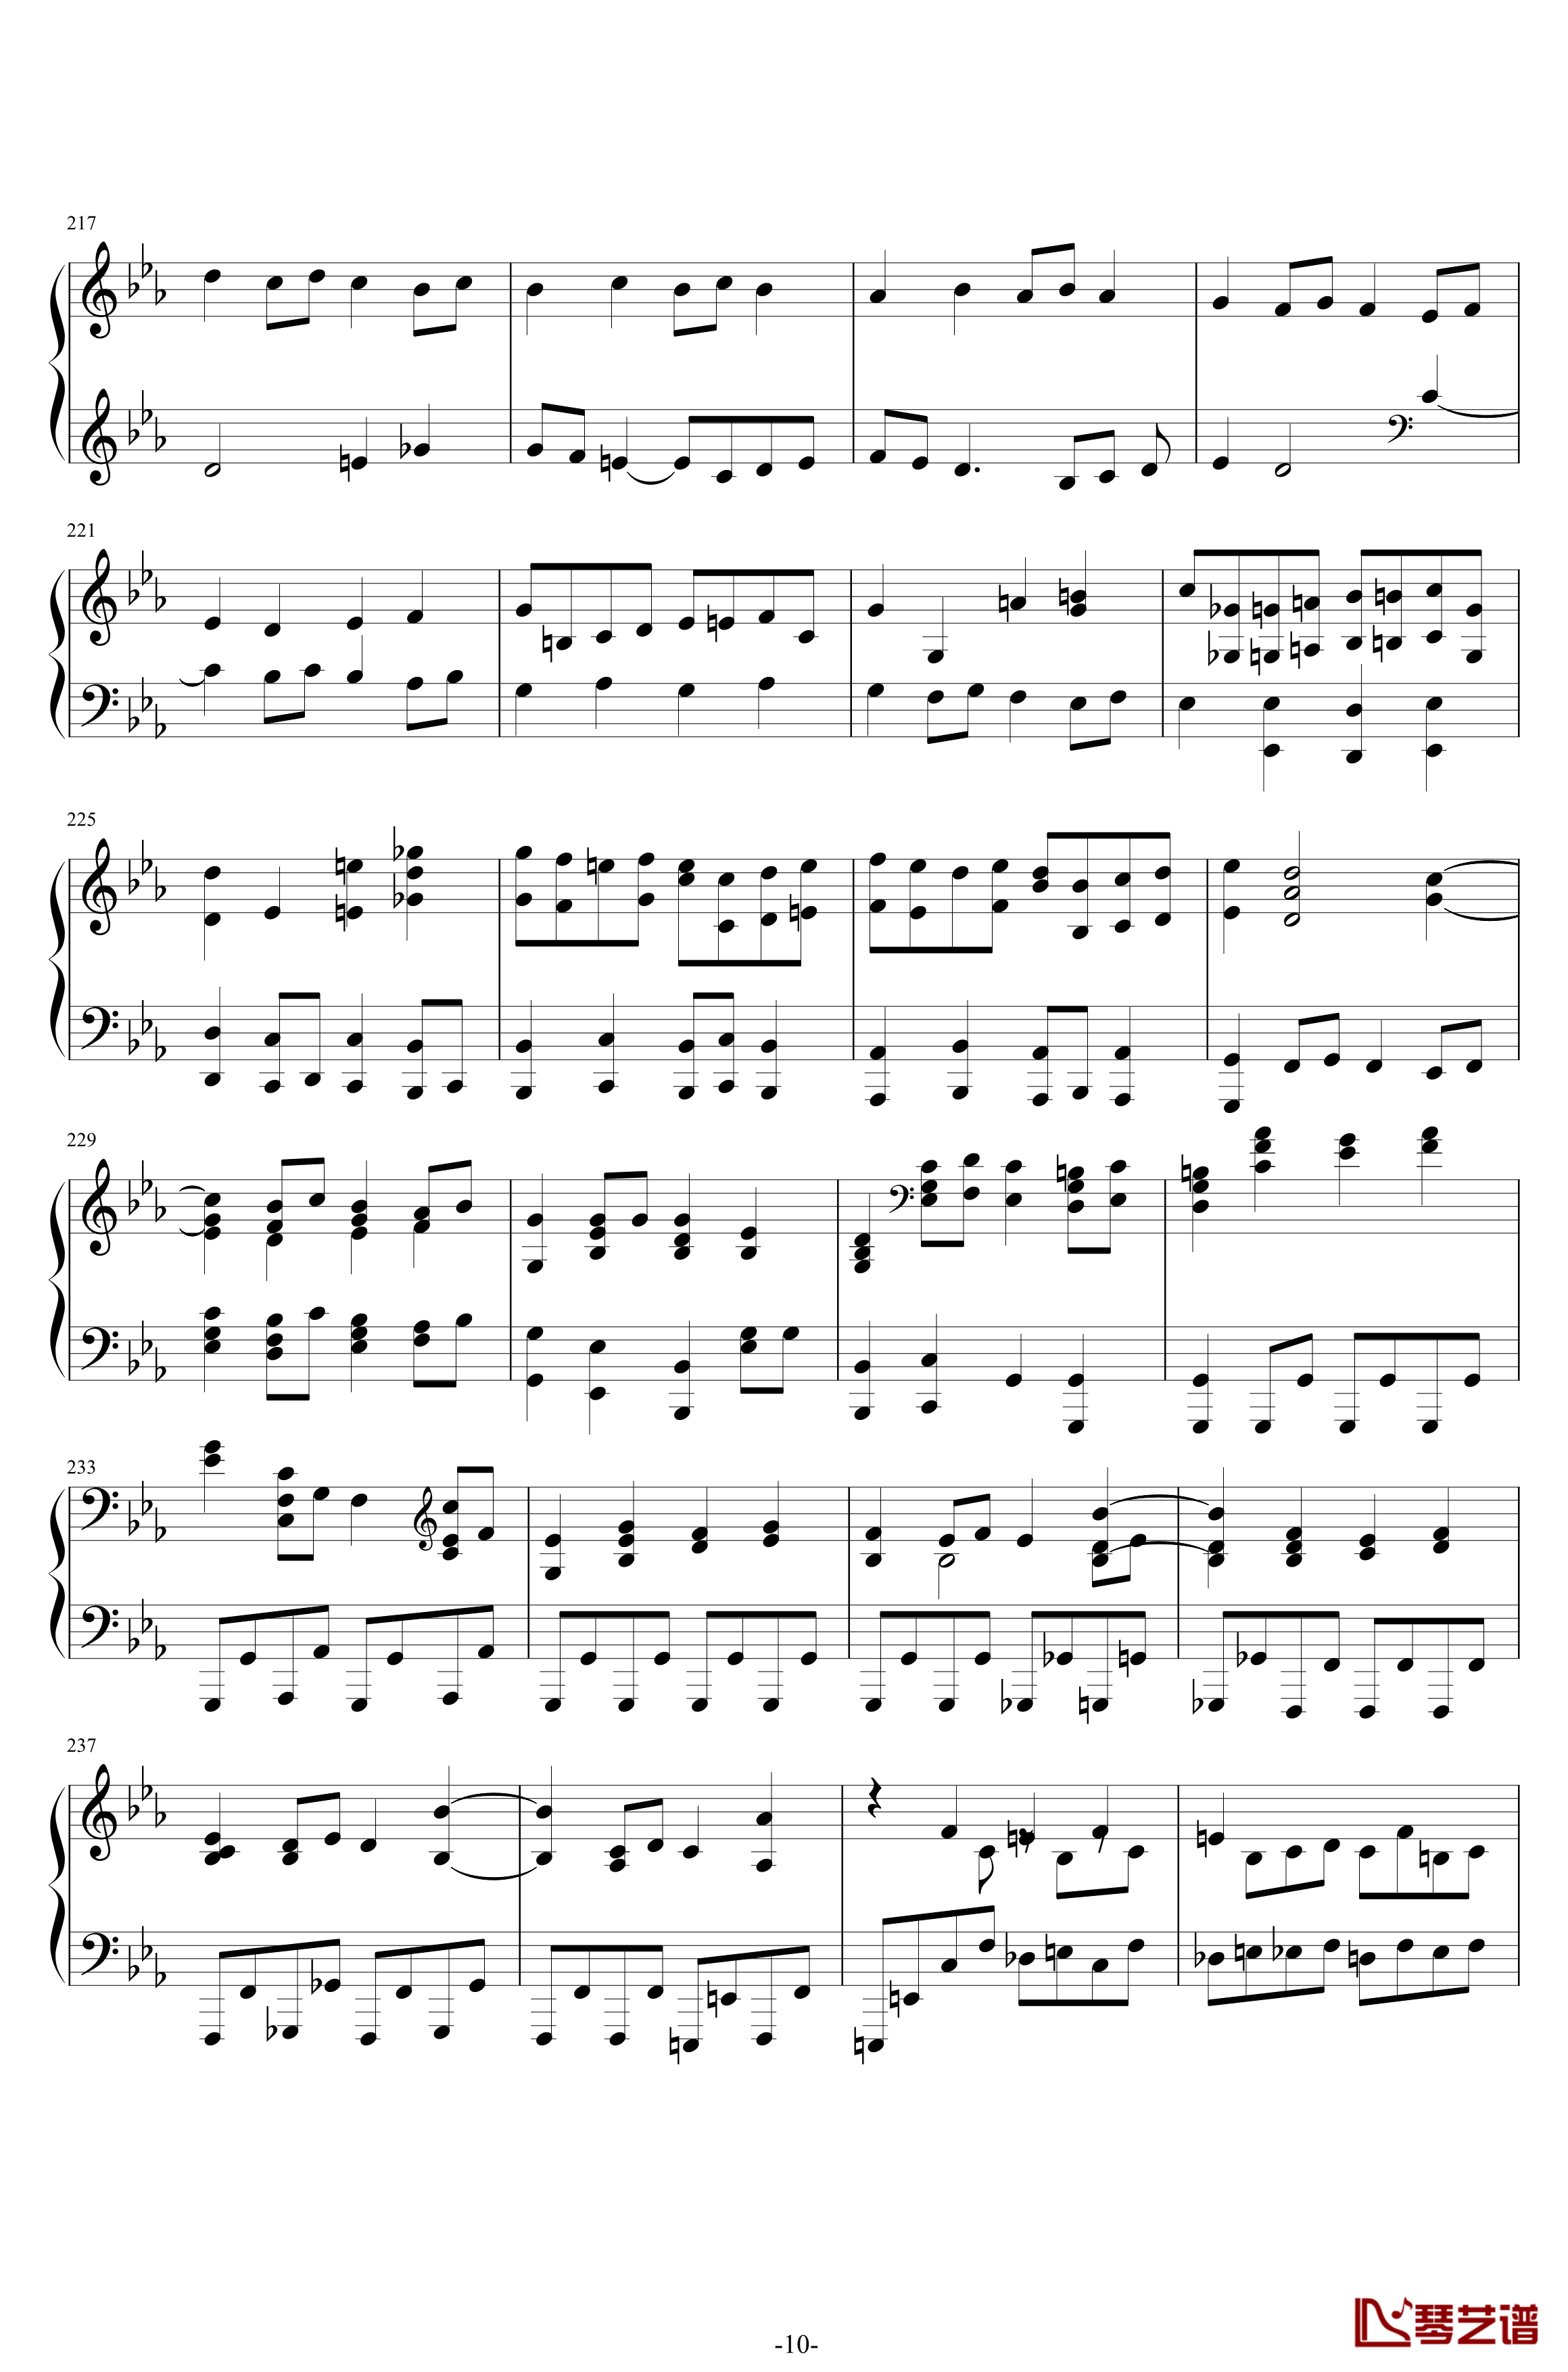 第二钢琴协奏曲钢琴谱-第三乐章独奏版-c小调-拉赫马尼若夫10